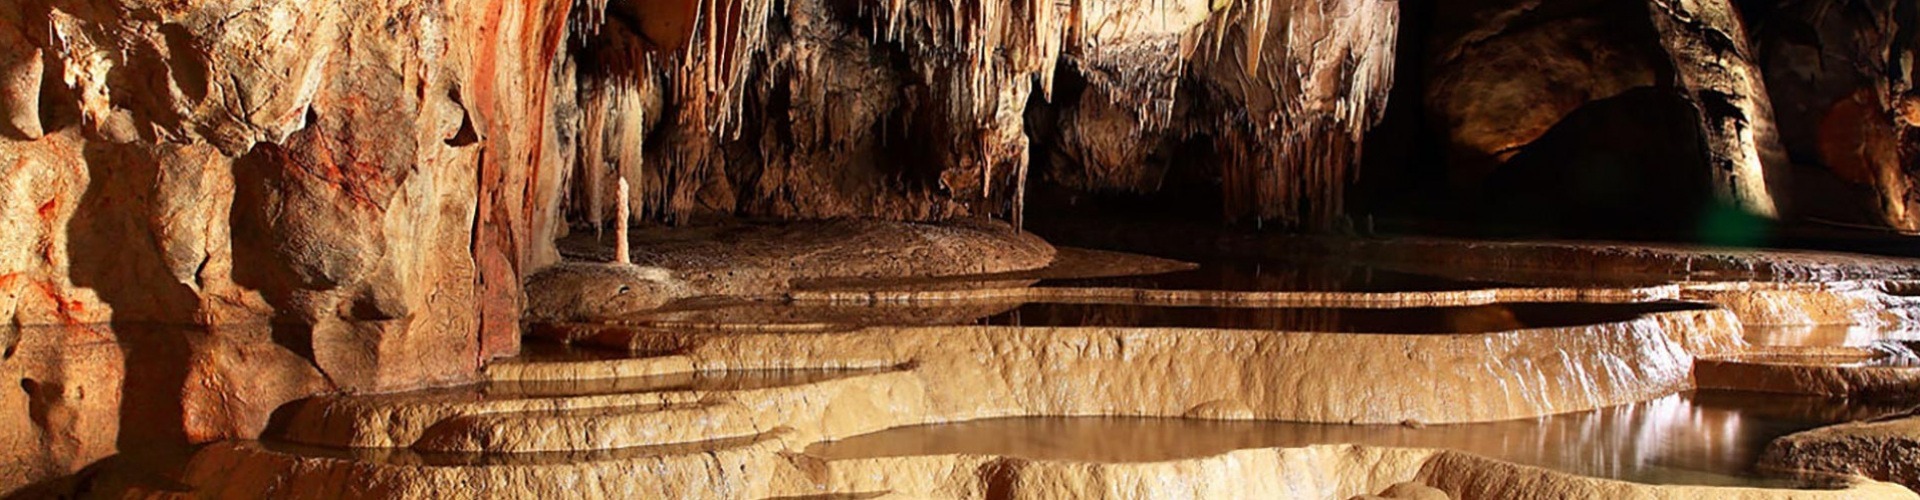 Kincs, ami nincs, avagy a Domicai-barlangot övező nagy semmi